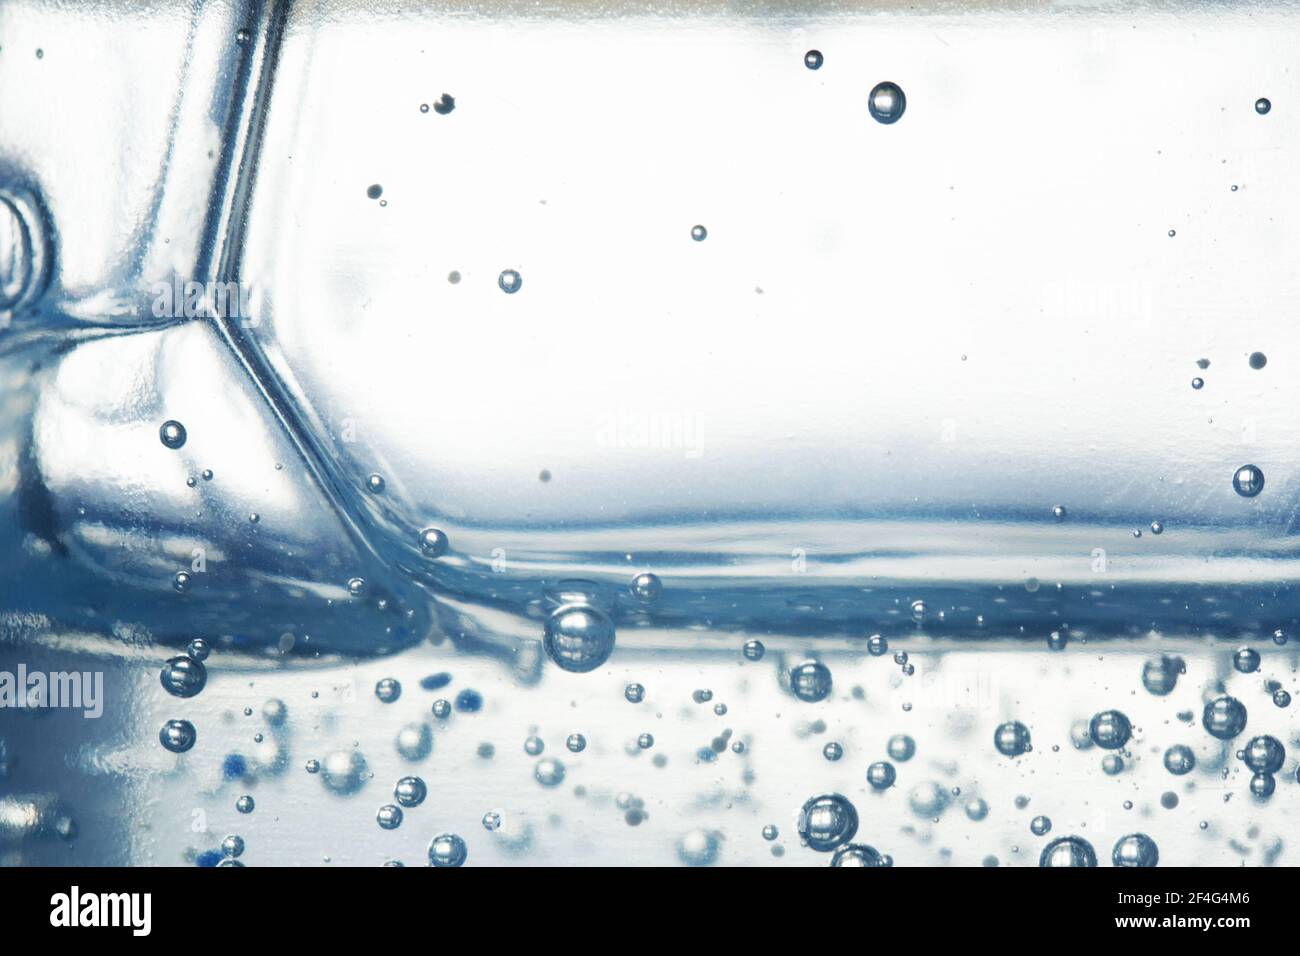 Kosmetisches Flüssigkeits- oder Wasserserum. Blasen in Wassergel. Abstrakter Hintergrund oder Textur. Bild mit geringer Schärfentiefe Stockfoto